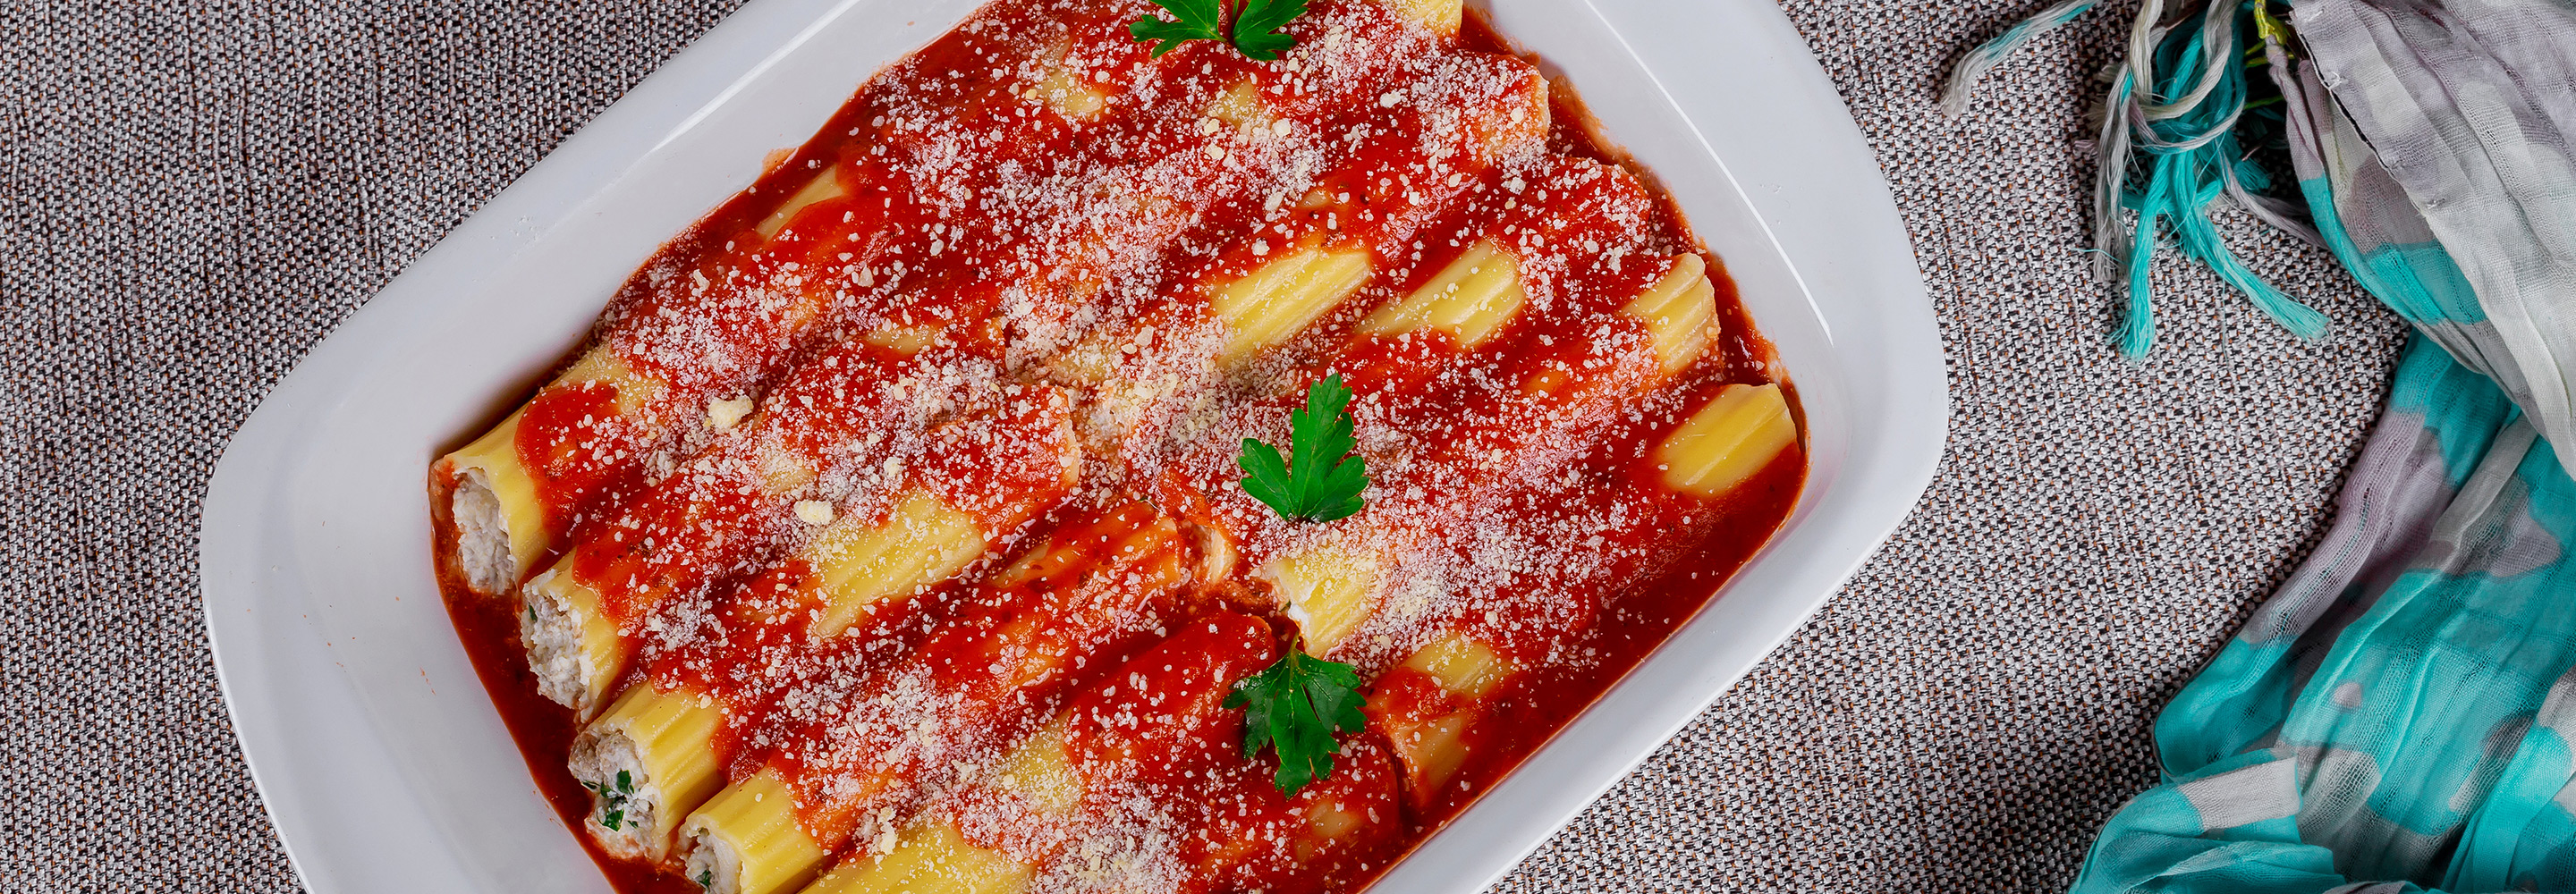 Cannelloni z ricottą, szynką, pomidorami i parmezanem - Galbani – od ponad 140 lat dostarczamy najlepsze włoskie smaki na talerze całego świata